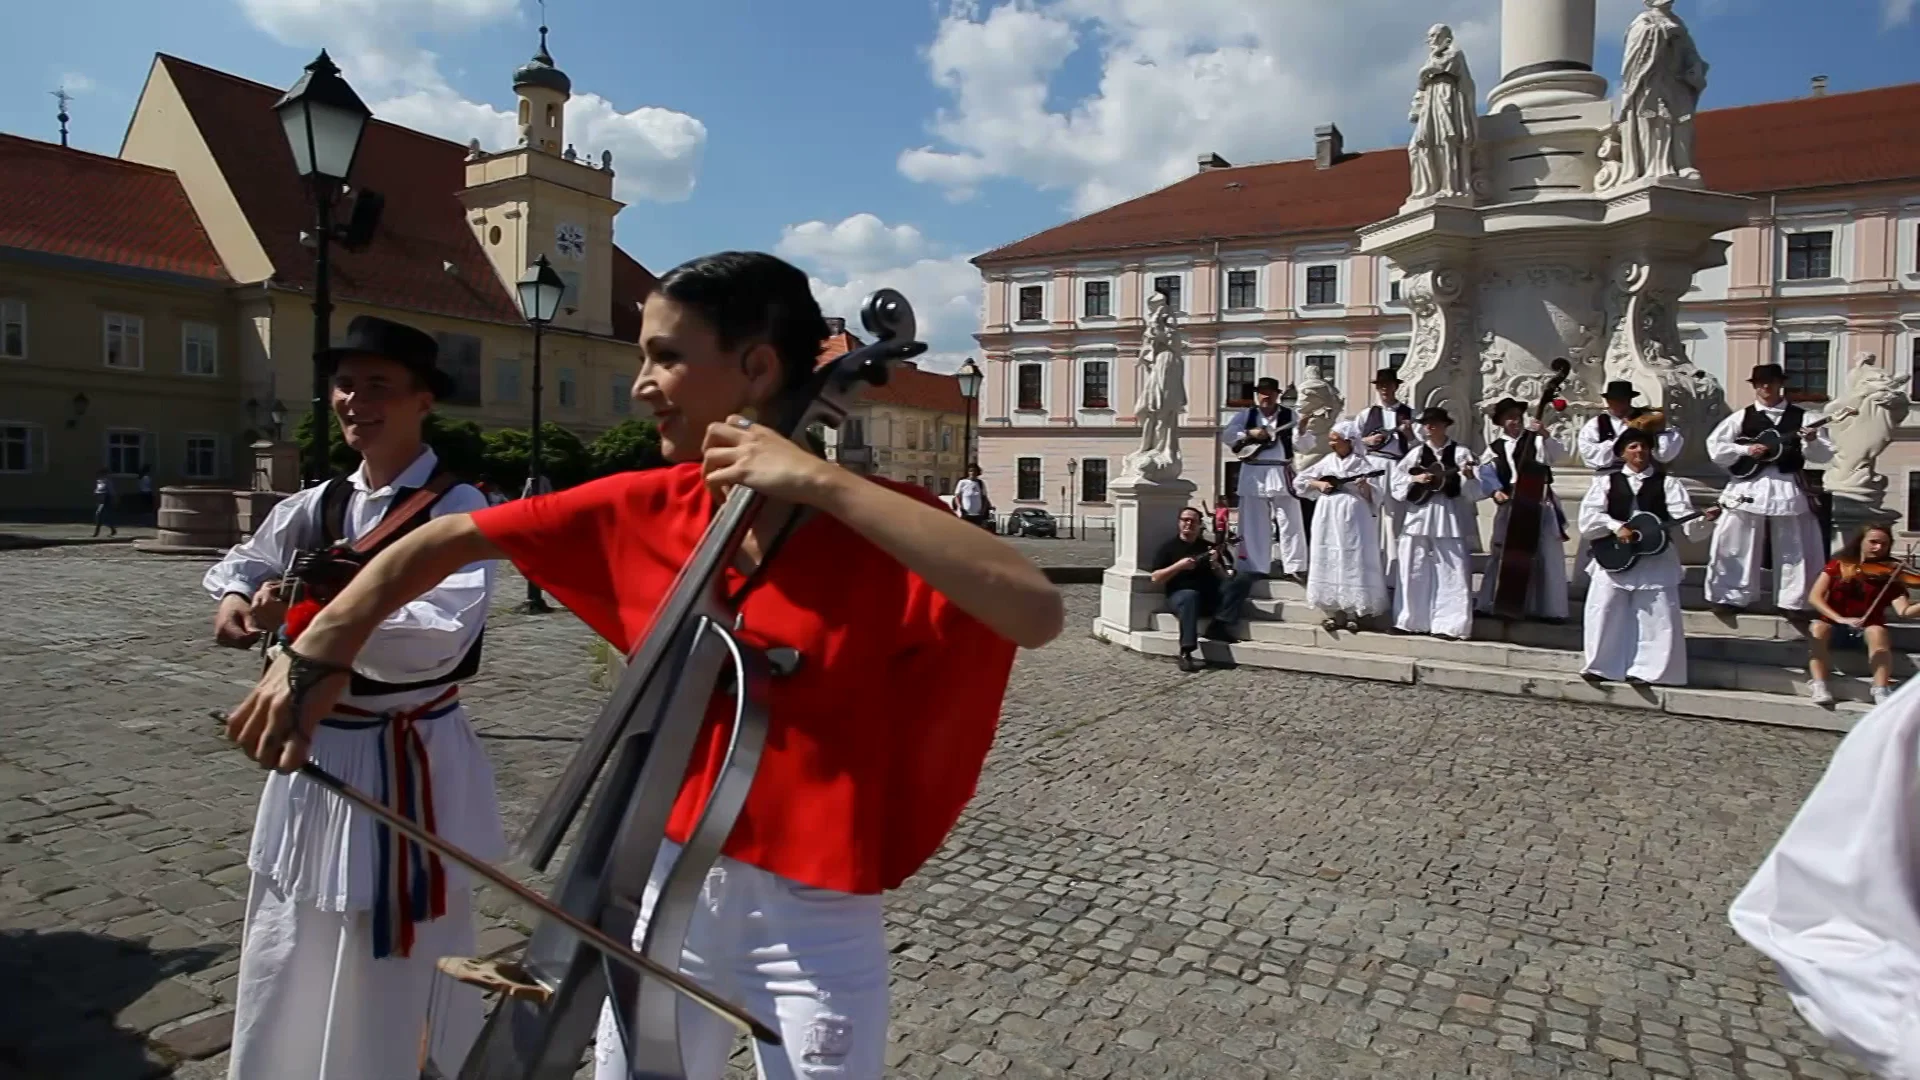 Ana Rucner feat. HKUD Osijek 1862 - Drmeš pleše cijeli svijet on Vimeo